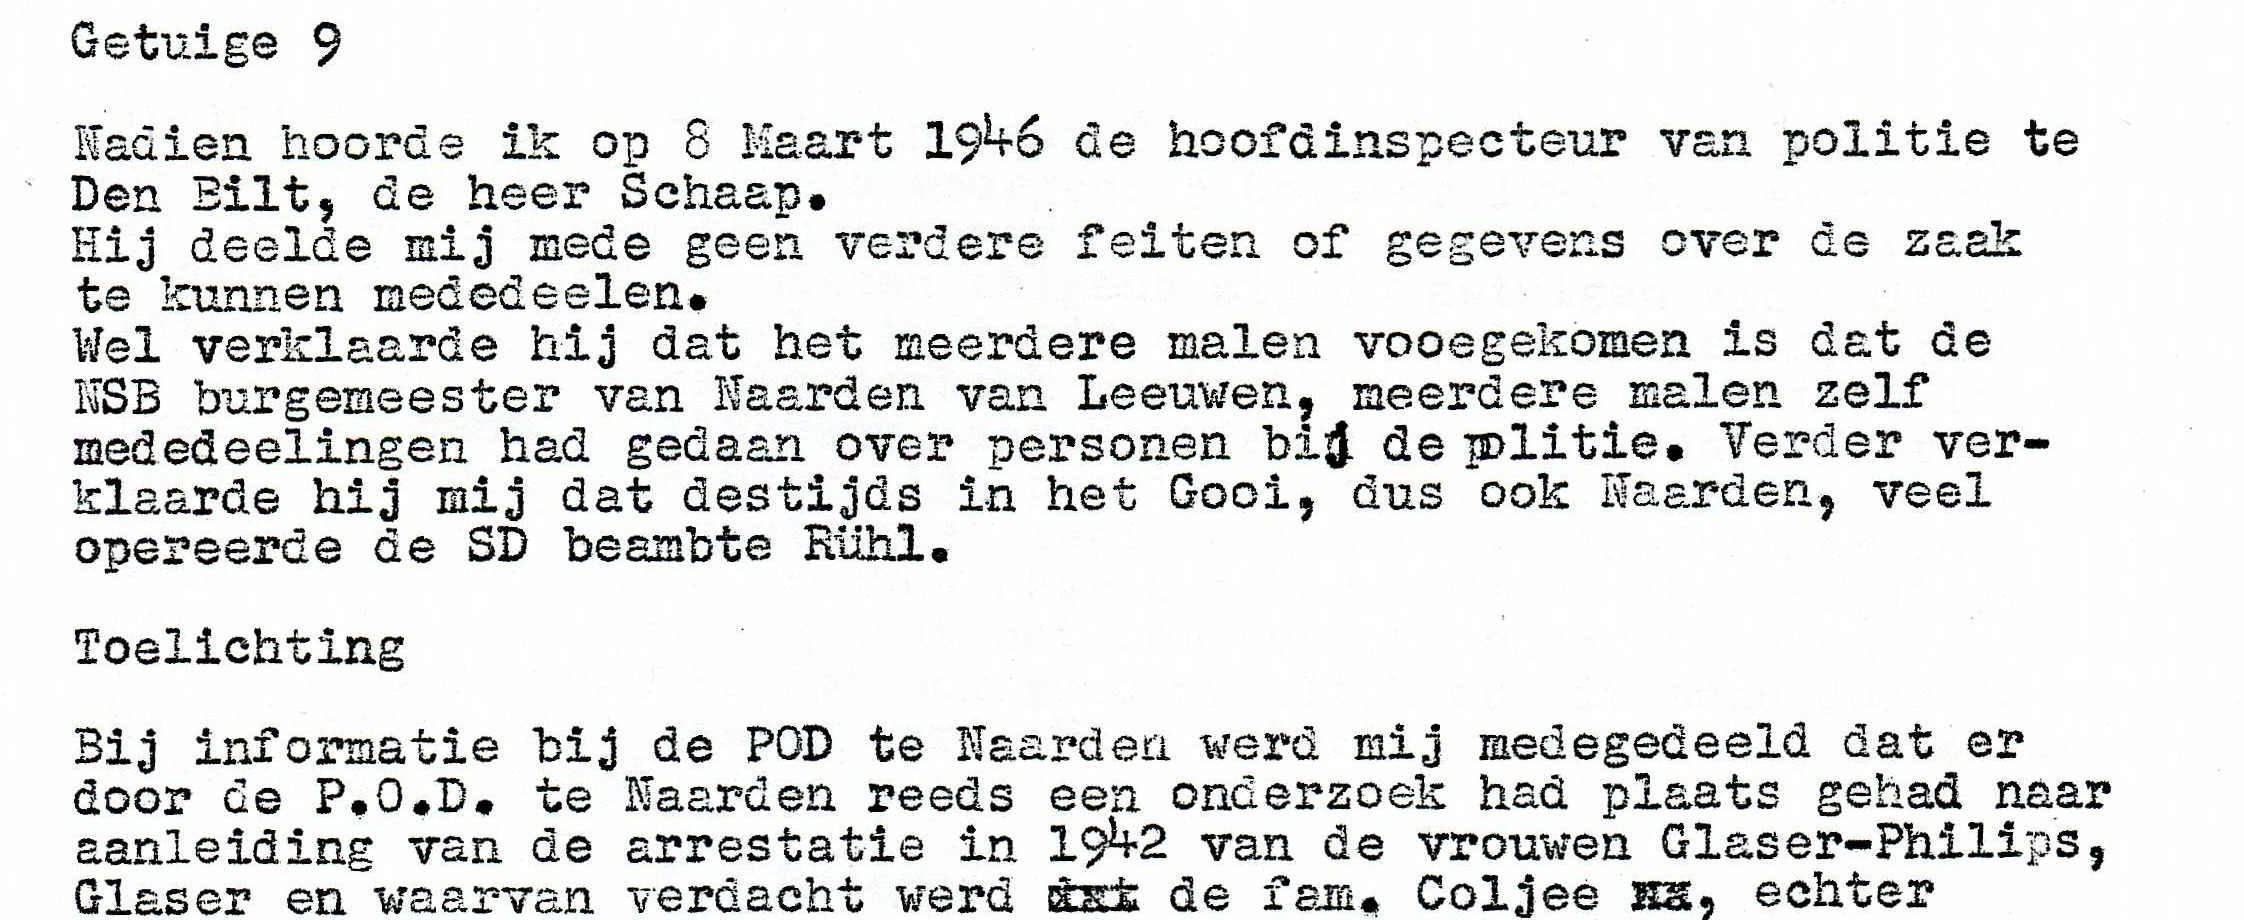 1946 declaration chief policeman did not know about arrest Aunt Rosie
